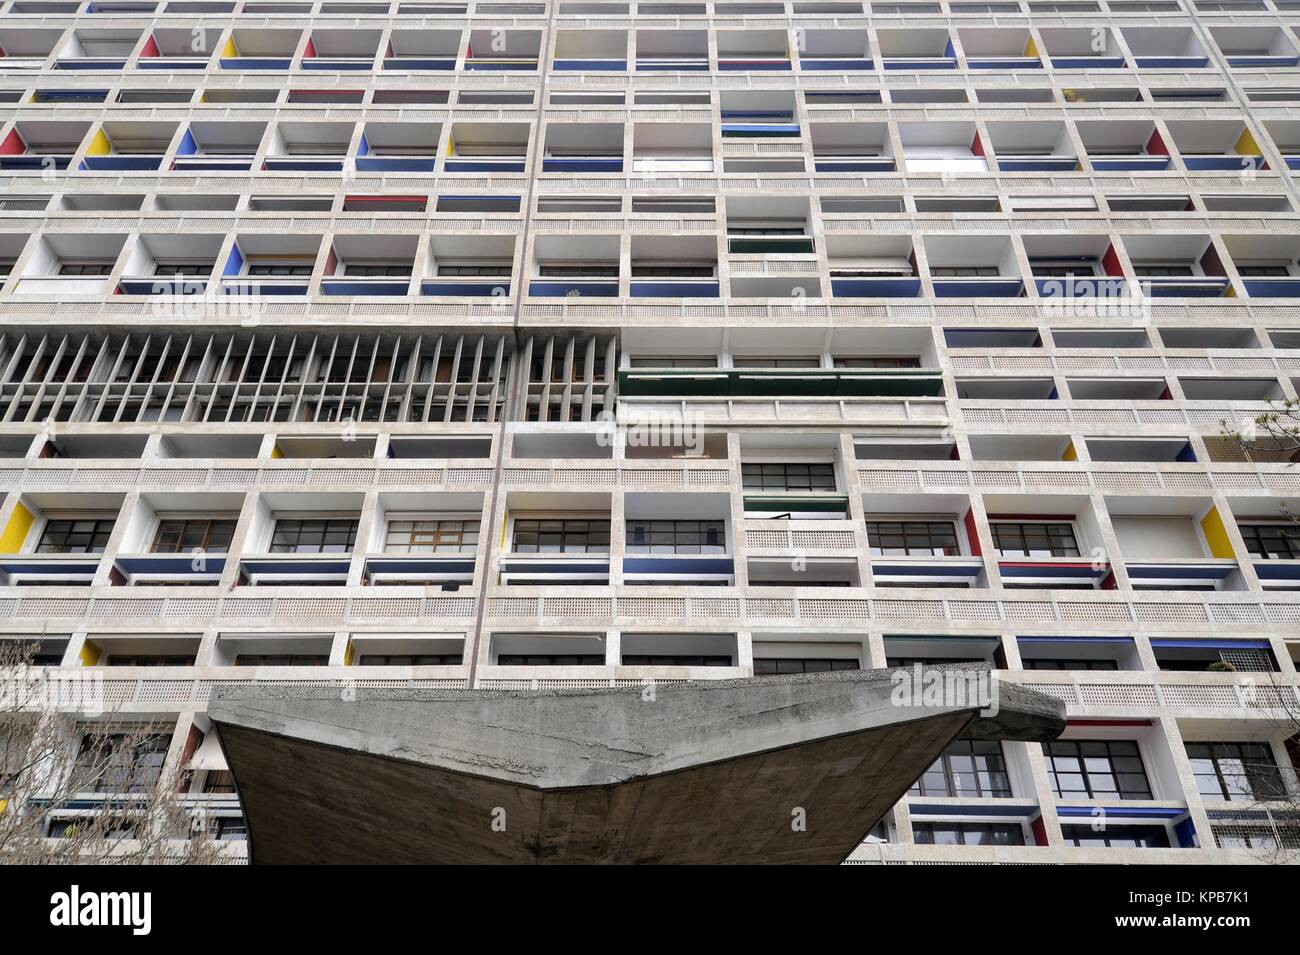 Marseille (France), l'habitation du logement social connu sous le nom de "La Cité Radieuse", conçu par le grand architecte Le Corbusier Banque D'Images